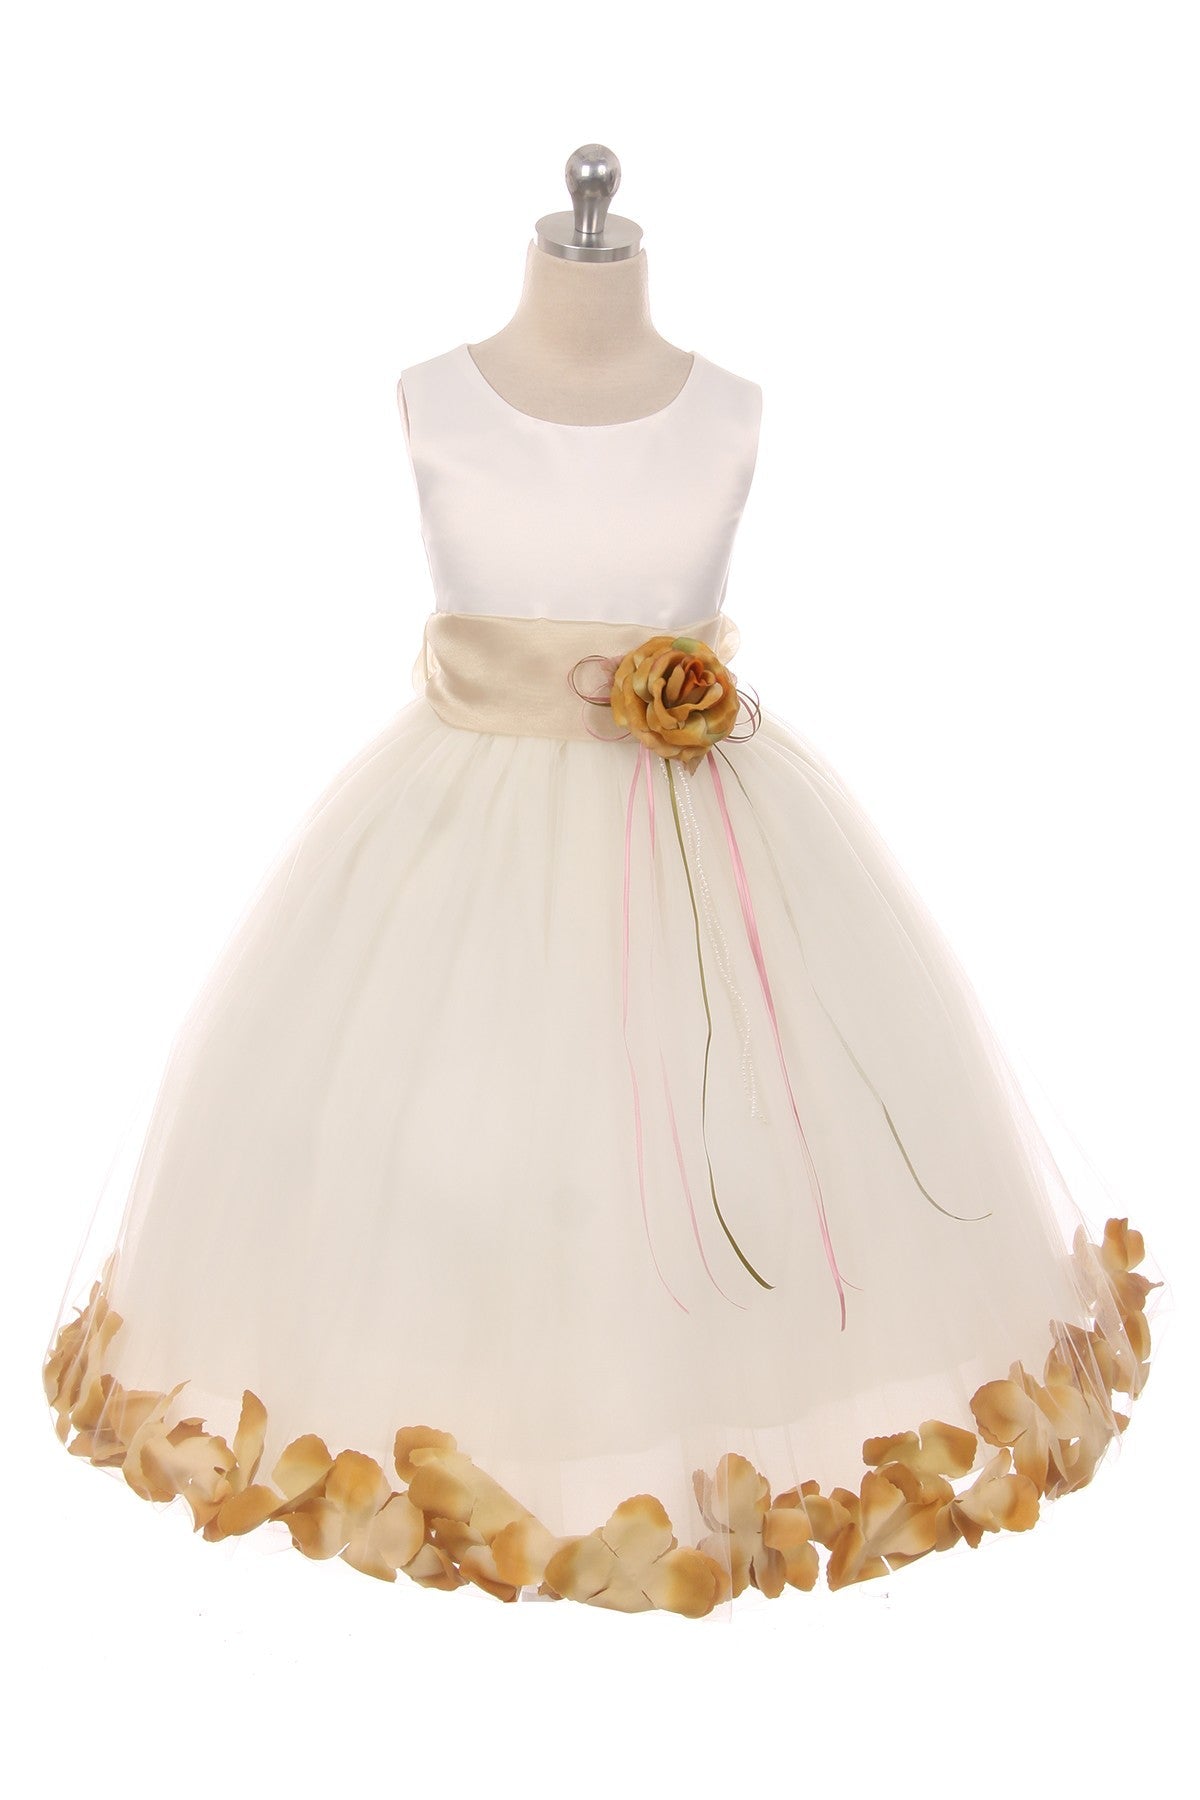 Satin Flower Petal w/ Sash Plus Size Dress (White Dress)